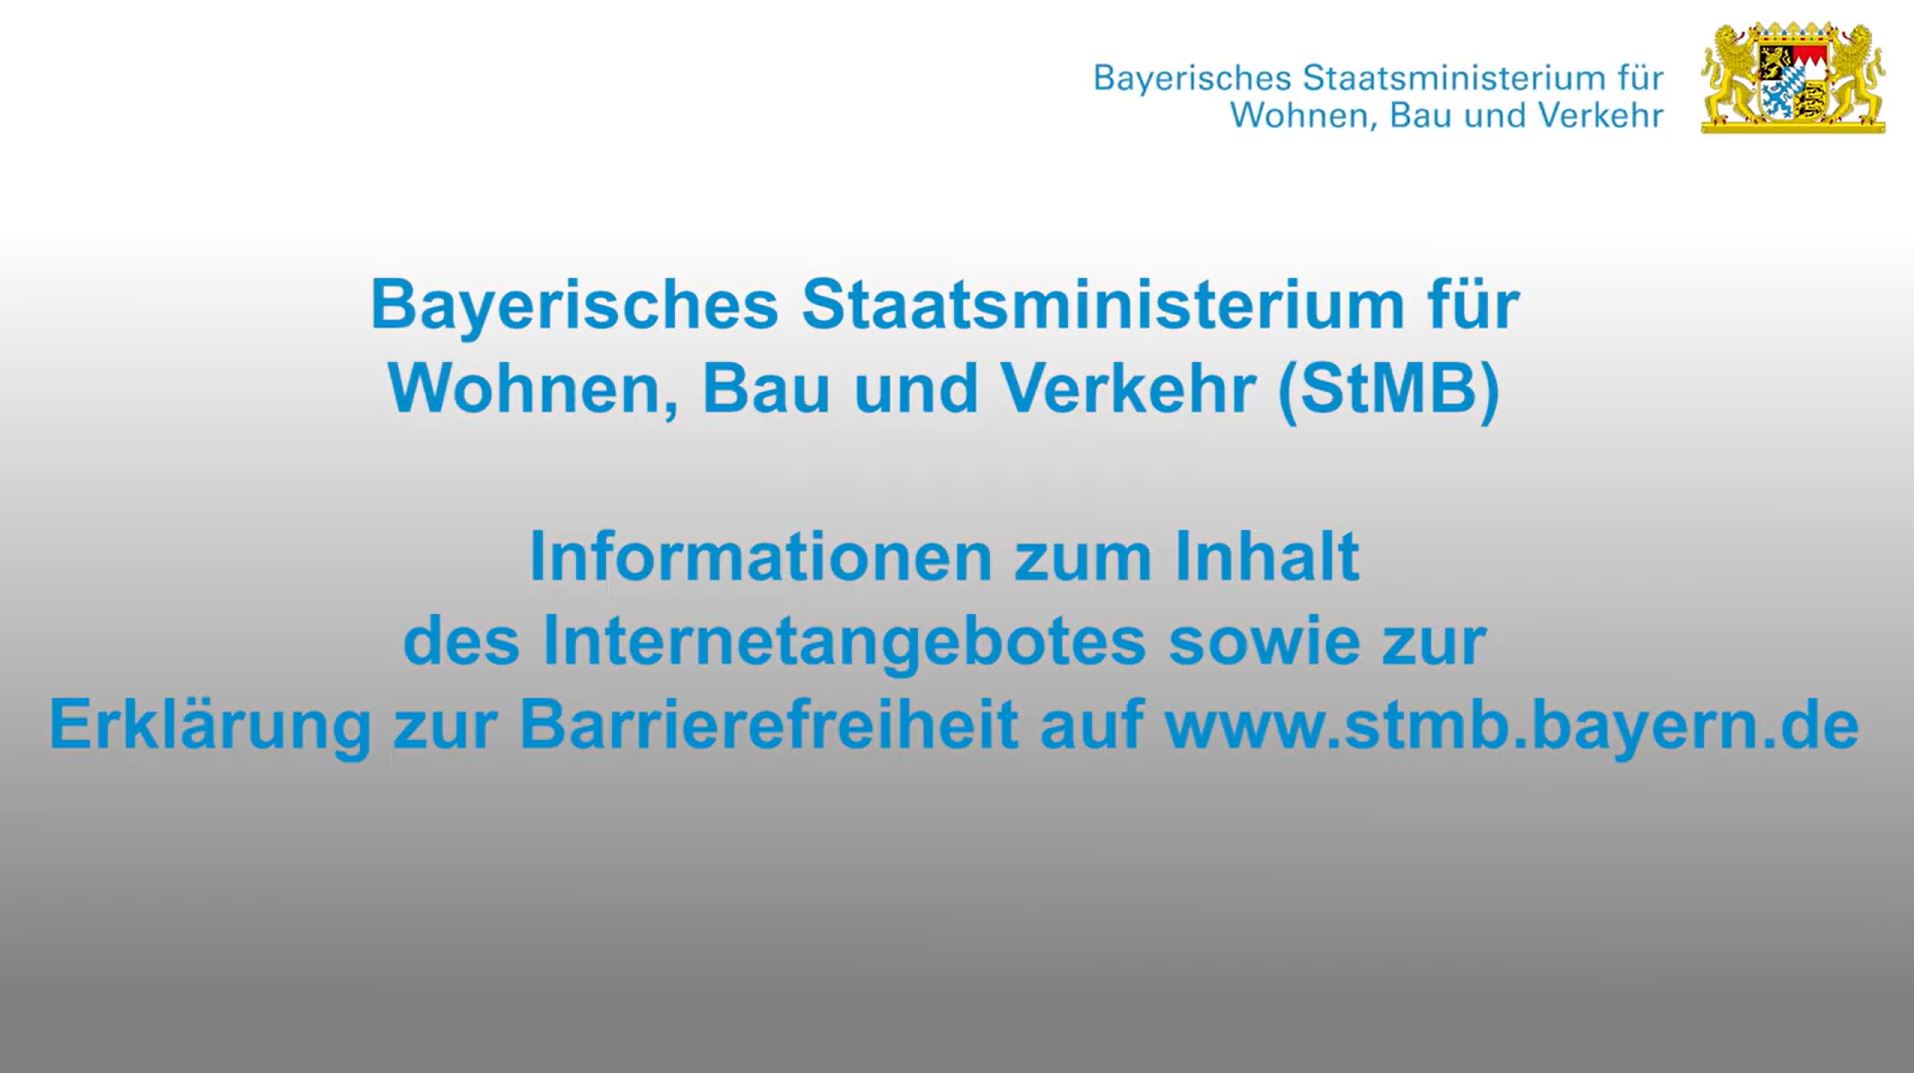 Das Video informiert über das Bayerische Staatsministerium für Wohnen, Bau und Verkehr. 